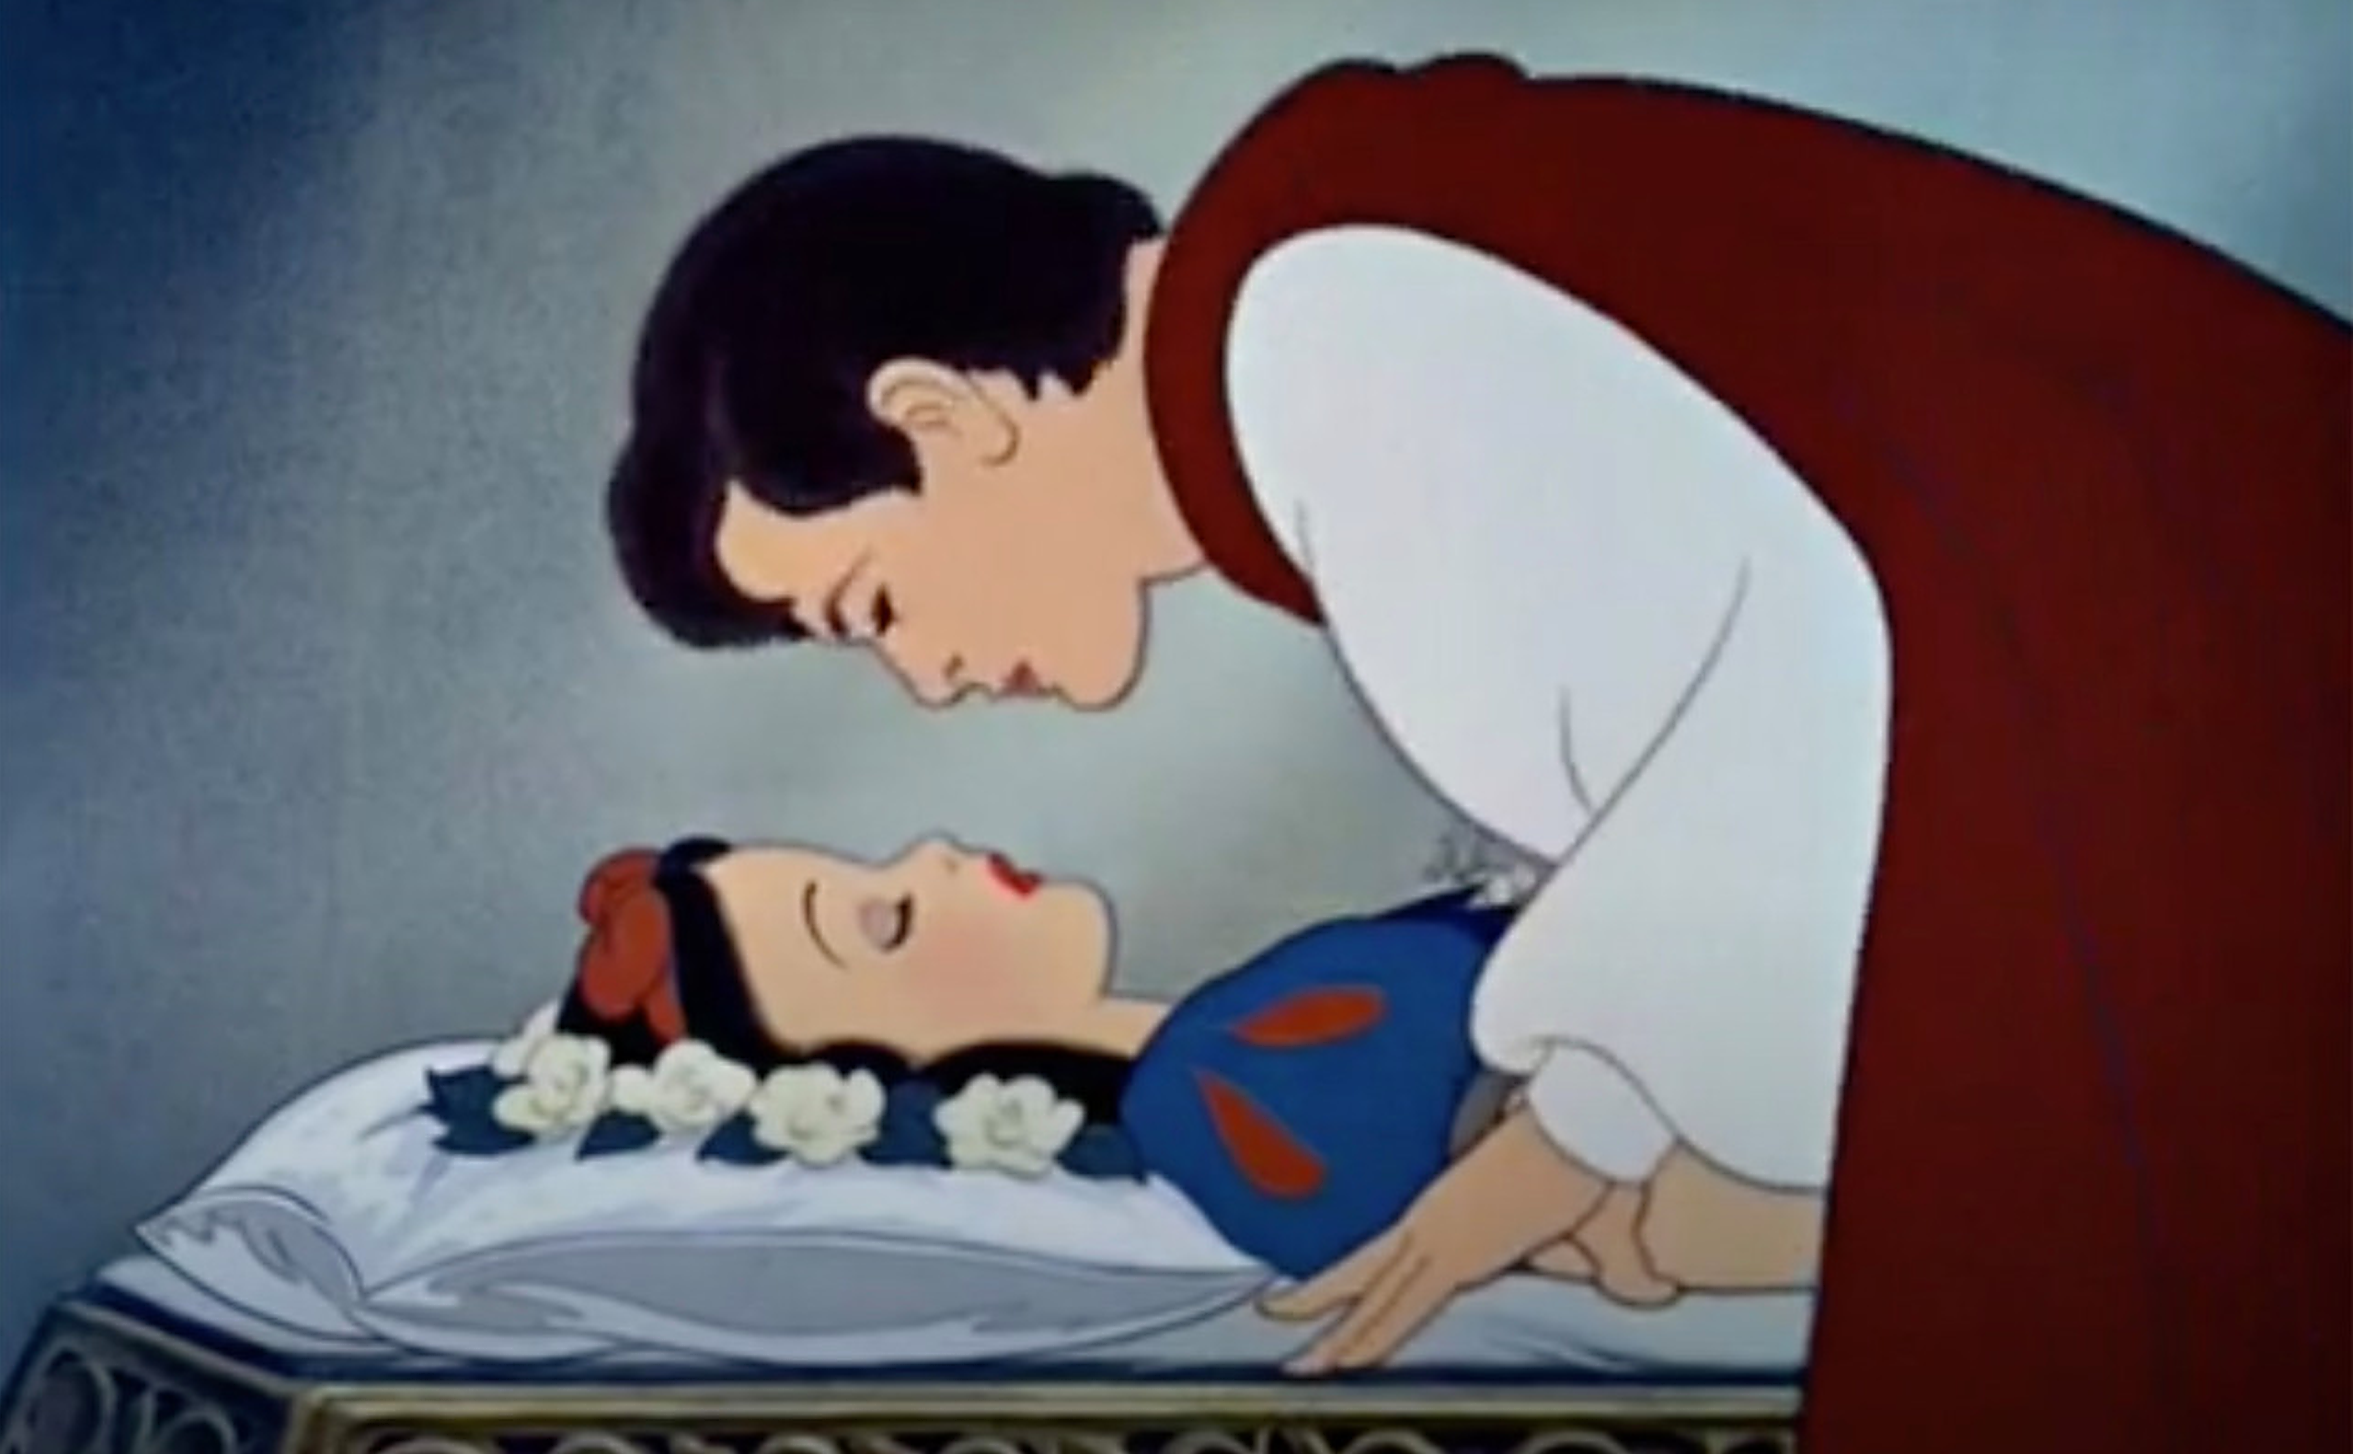 Activiști de basm| Prințul este acuzat că o sărută pe Alba ca Zăpada fără permisiunea ei. Criticii solicită înlocuirea scenei